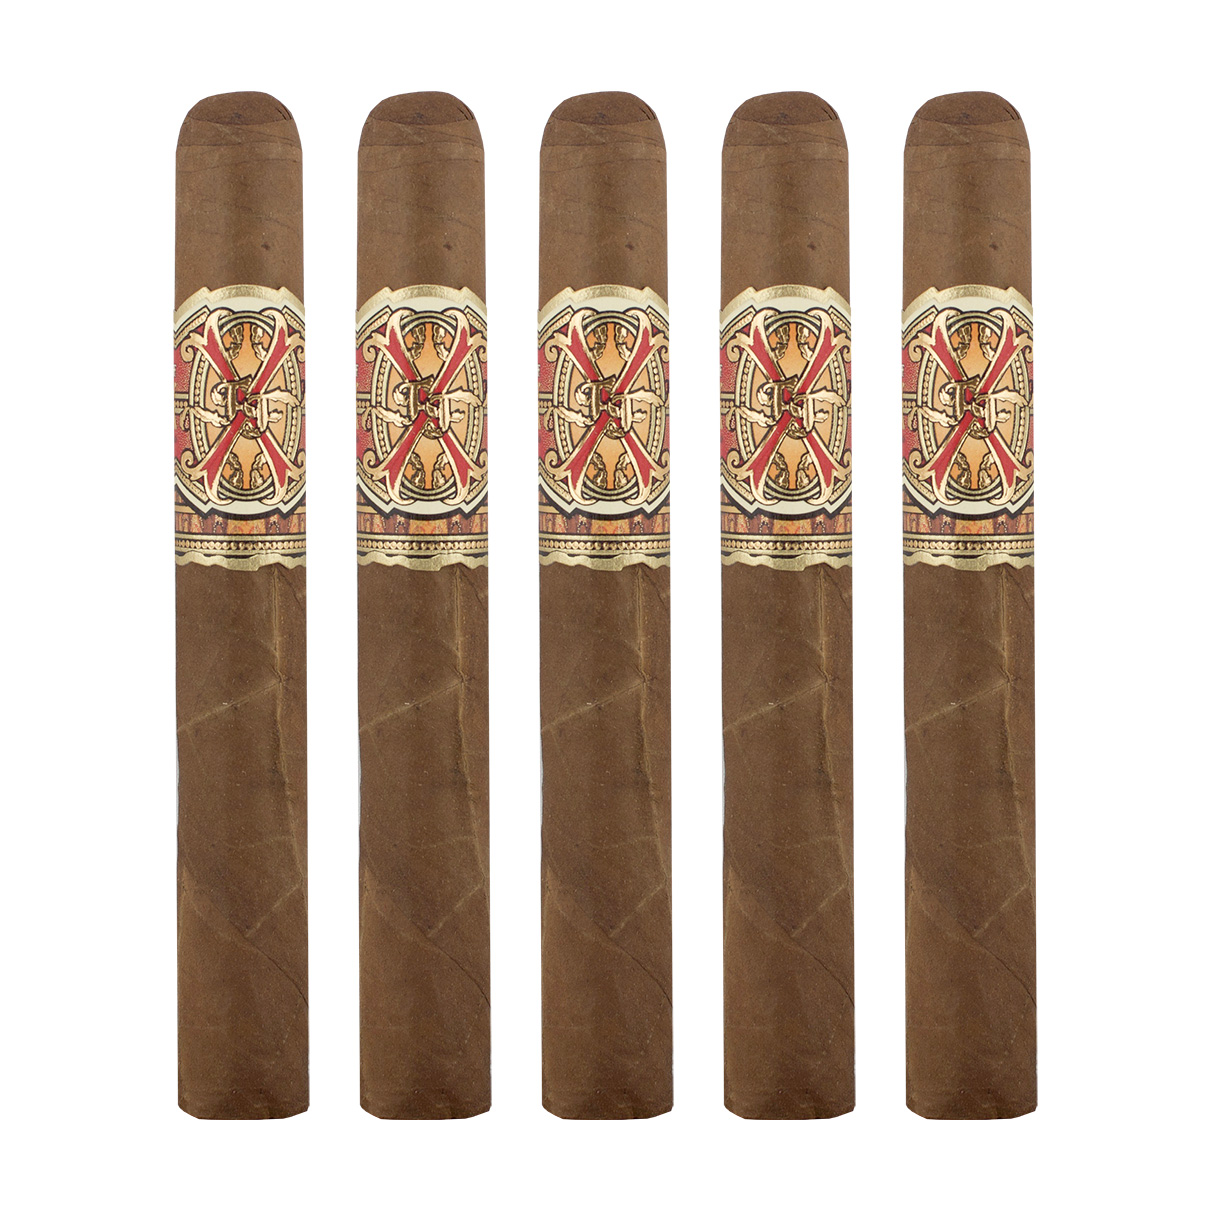 Arturo Fuente OpusX PerfecXion No. 5 Cigar - 5 Pack